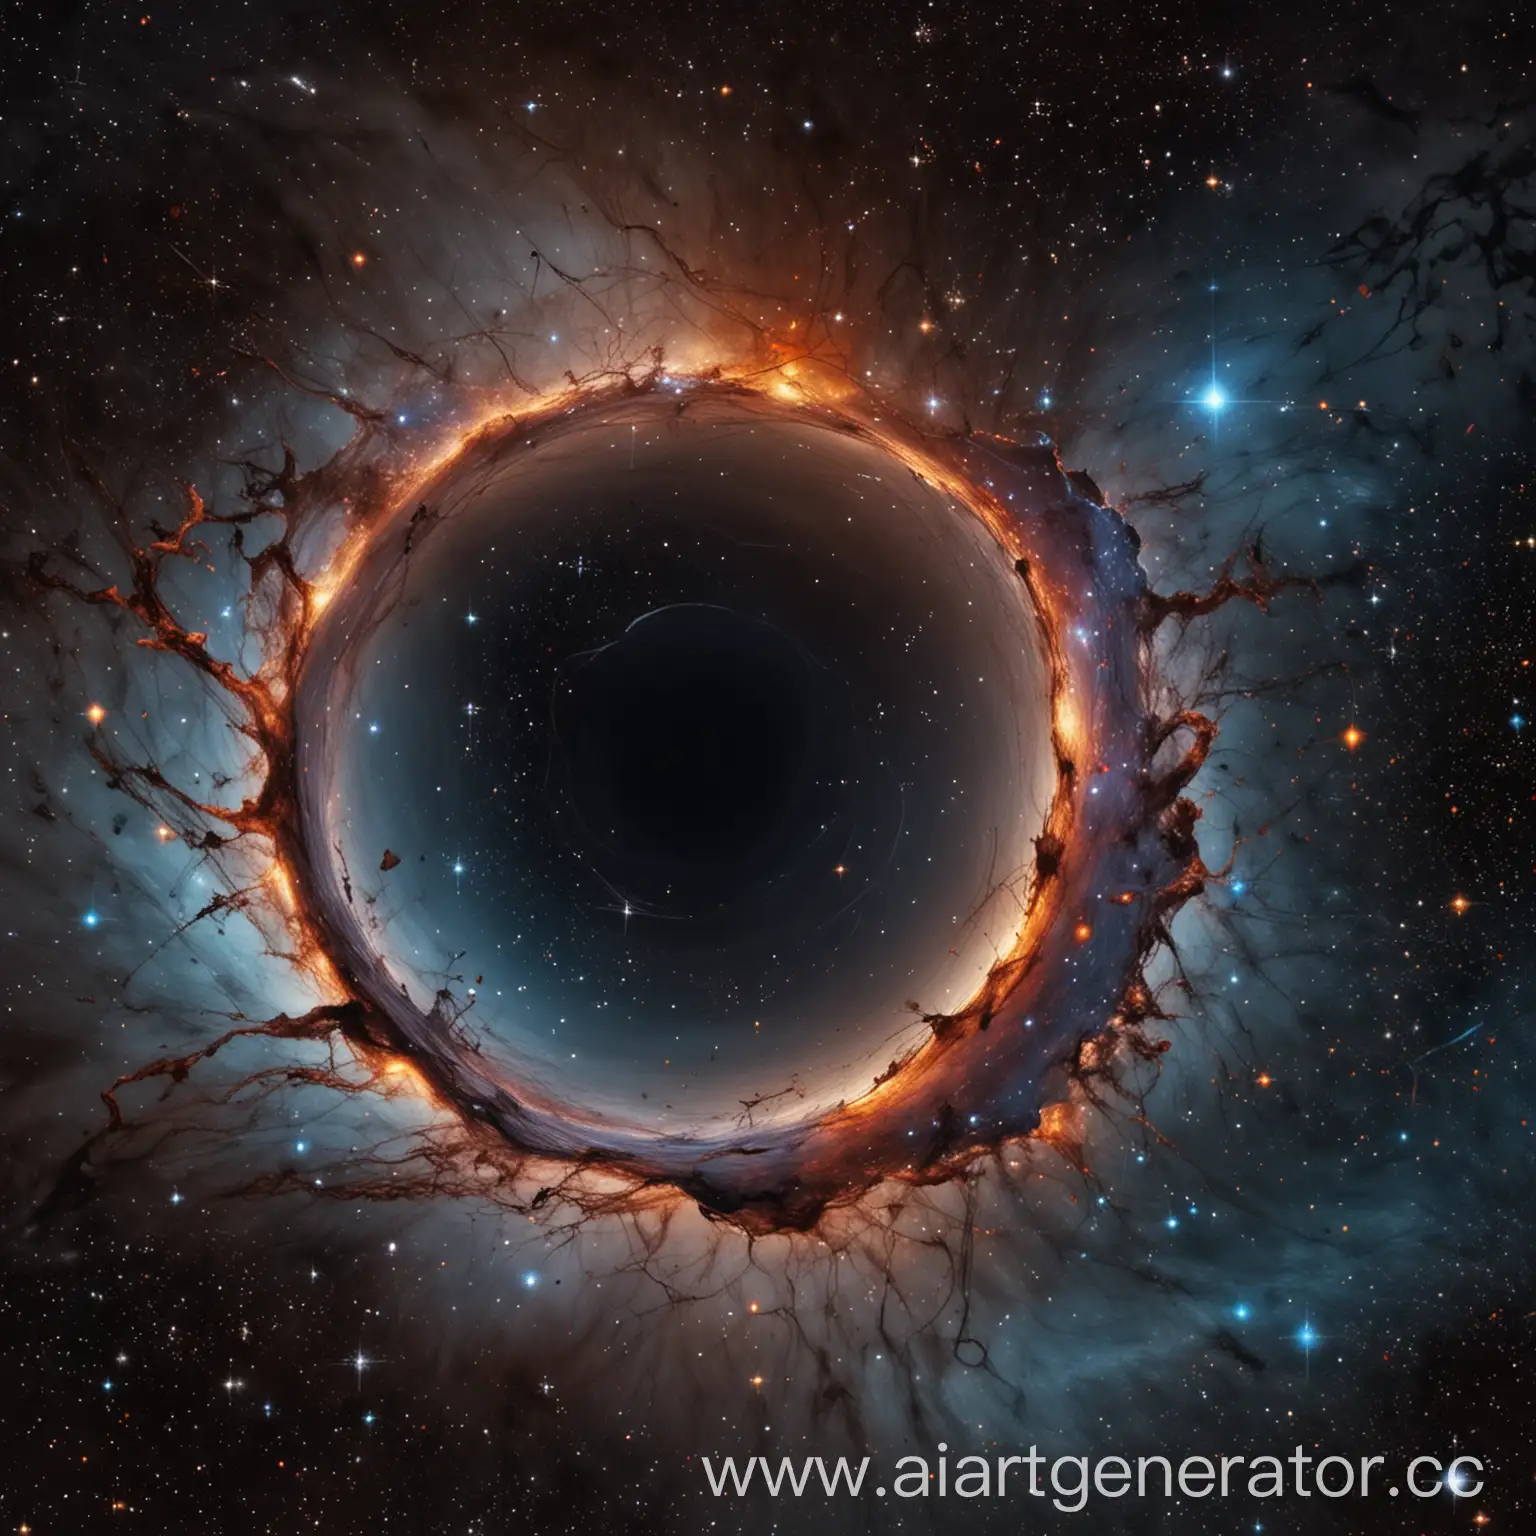 абстрактное изображение вселенной, на котором присутствует черная дыра, созвездия и туманности
